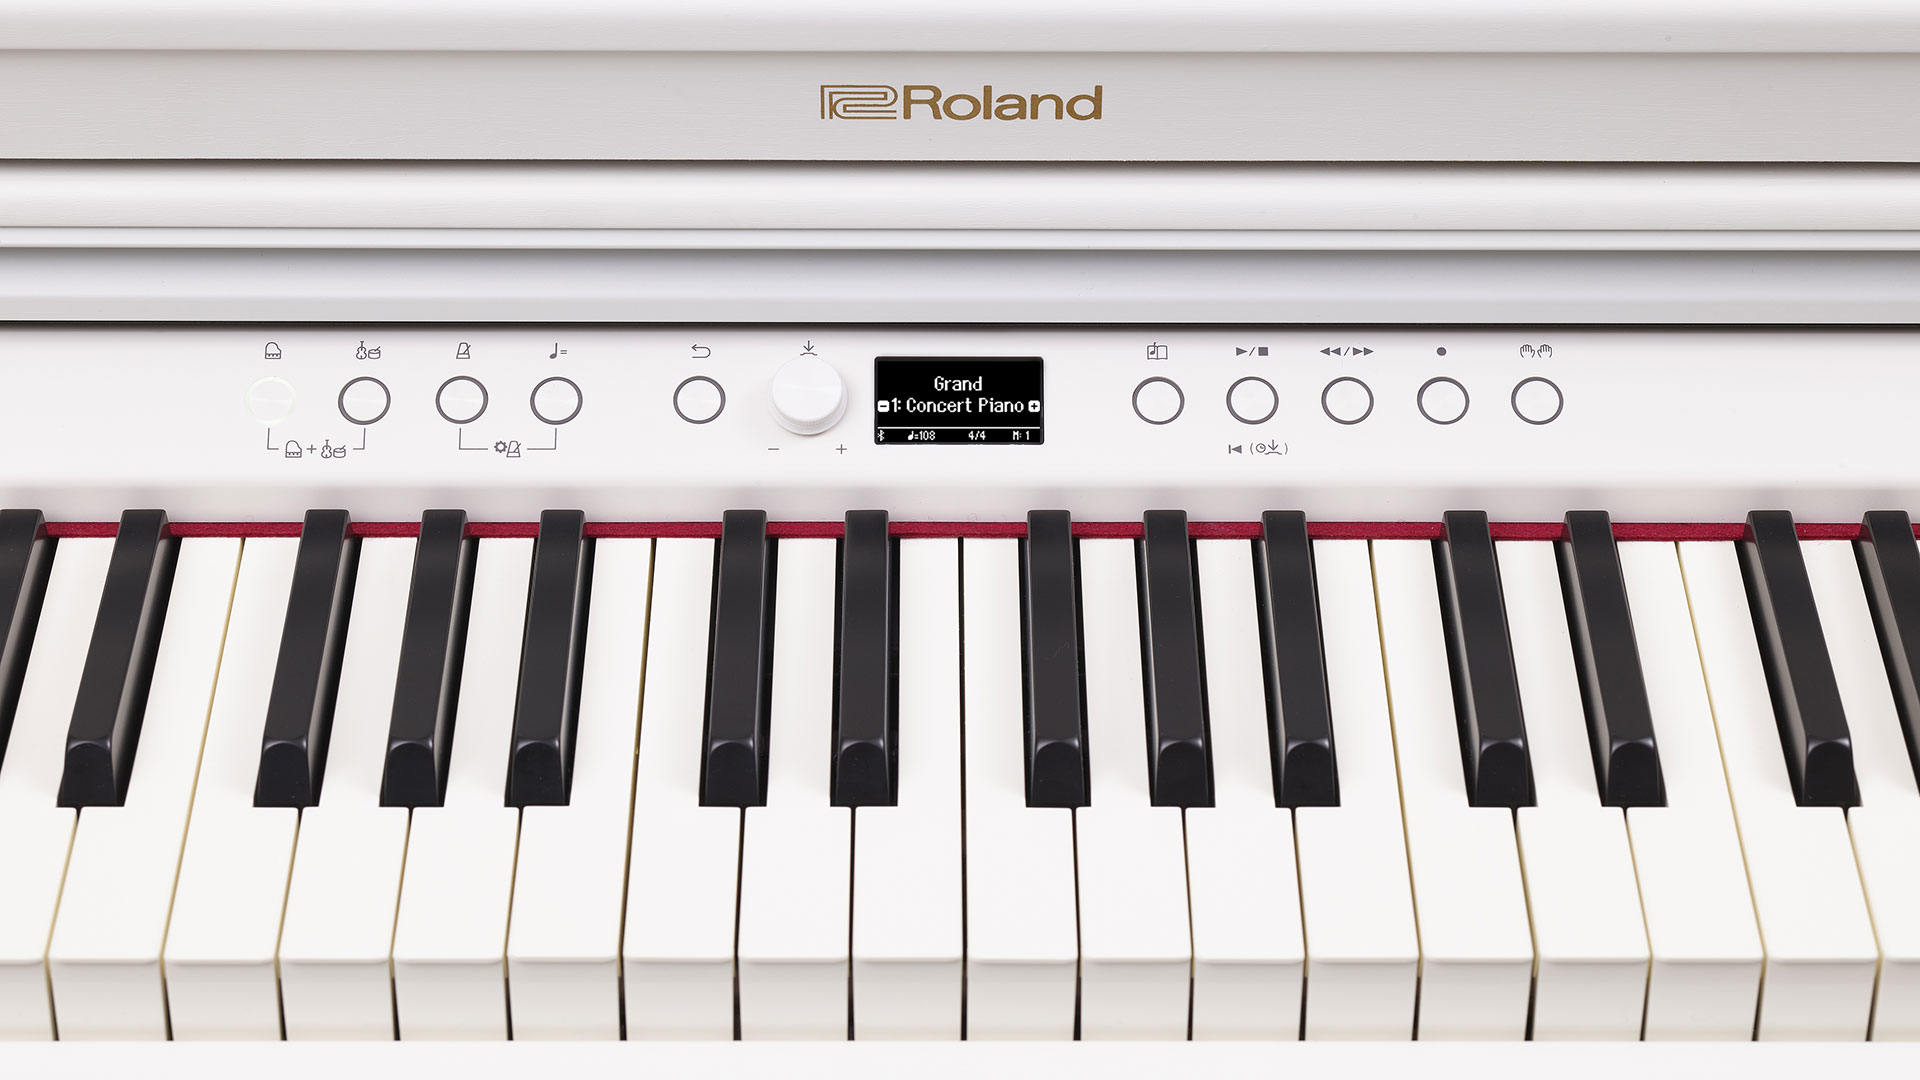 Roland digital piano rp701